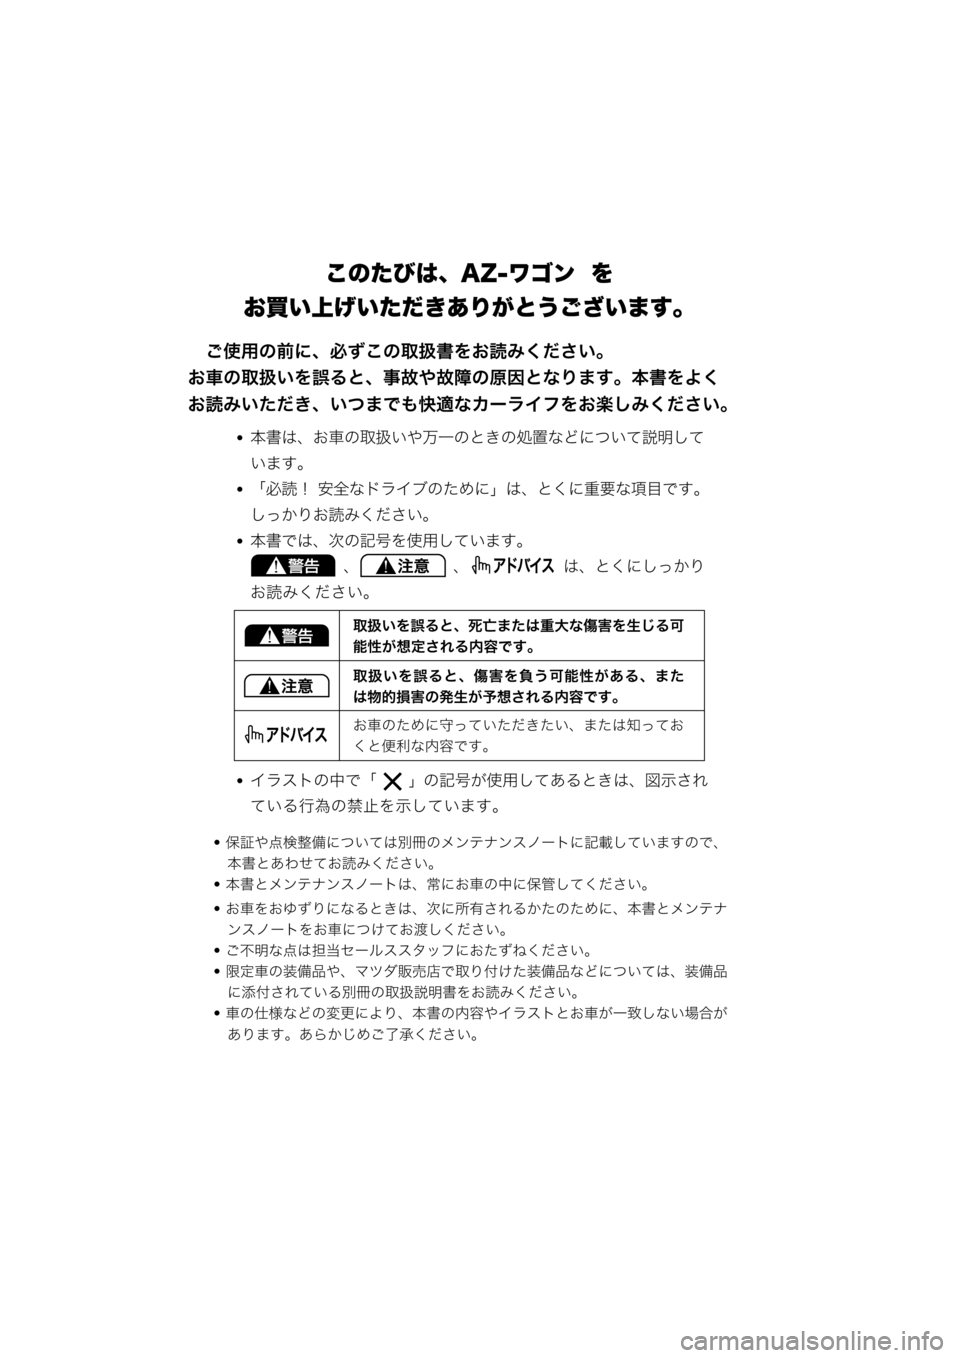 MAZDA MODEL AZ-WAGON 2011  取扱説明書 (in Japanese) ÁBþ~AX
eWåâA; AÚ=<>79b¥*9
Q,ÿ
Á	Rc� §?=“³n A2T>	Bþ;">~õ=1;:,ÿ
*6]cR"3(ÿ
Á:Bþ
’A$p